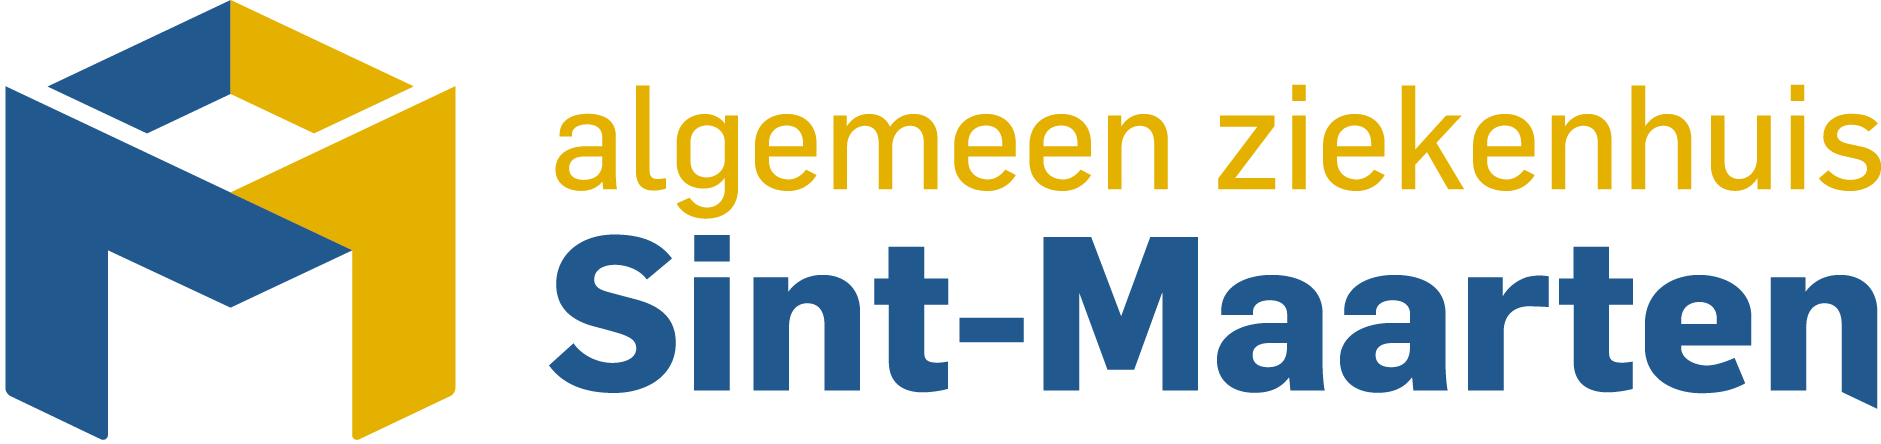 AZ Sint-Maarten logo